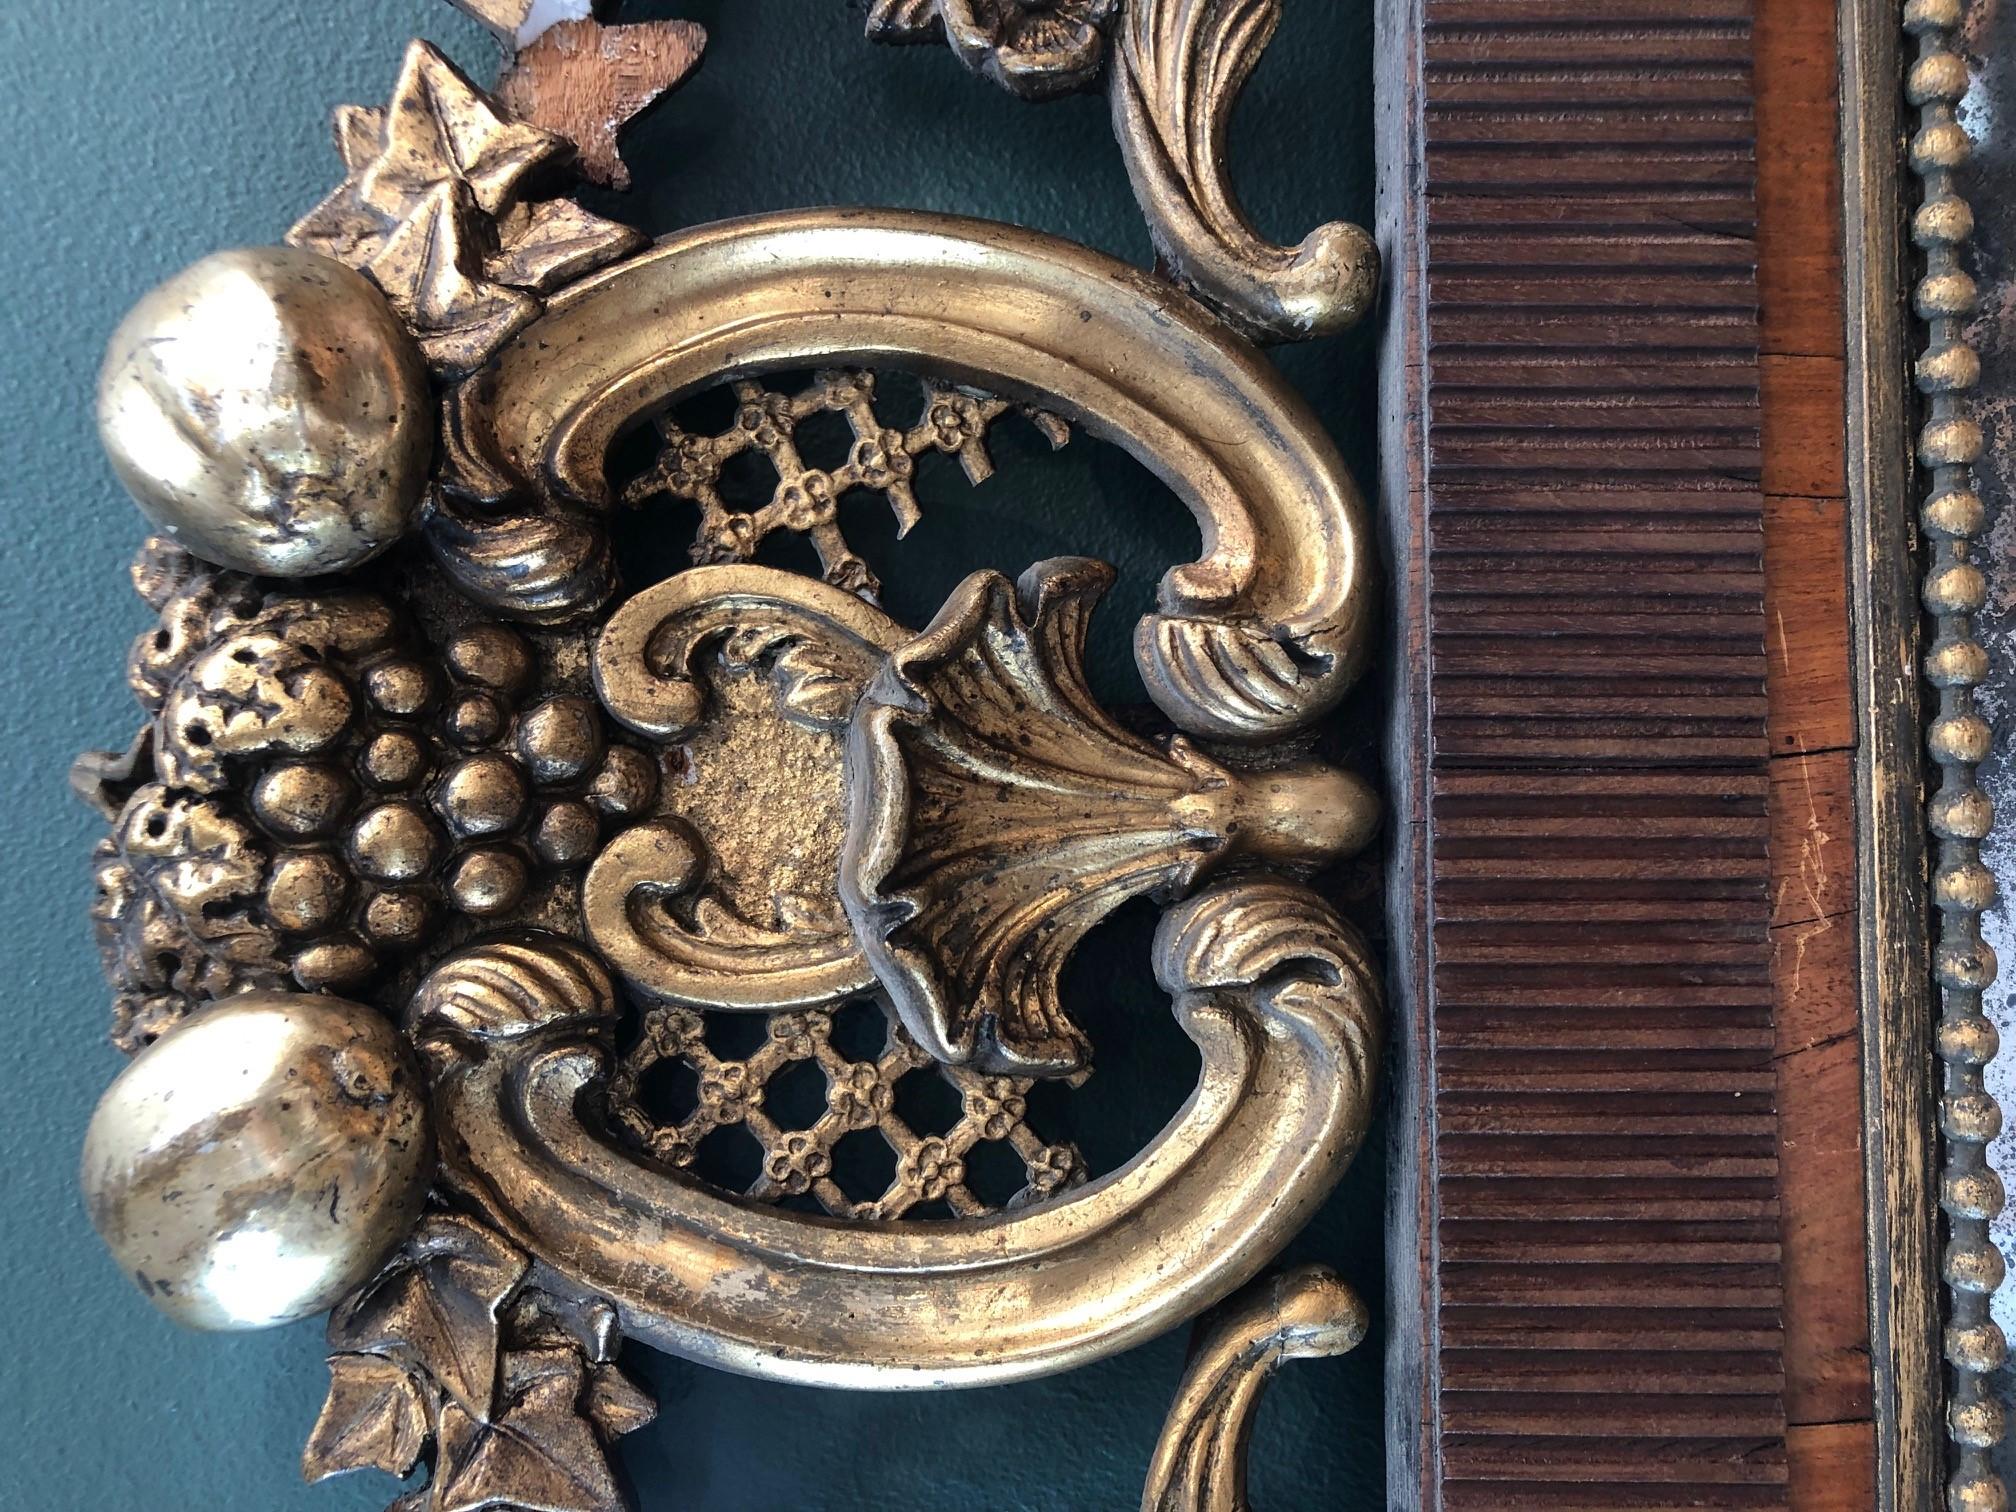 Französischer Louis-XVI-Spiegel mit Mahagonirahmen und originalem Quecksilberspiegelglas. Mit Spiegelperlen besetzte Holzleiste. Der Spiegel wird von einer Holzschnitzerei überragt, die Blätter und Früchte mit Vergoldung darstellt.
Frankreich um